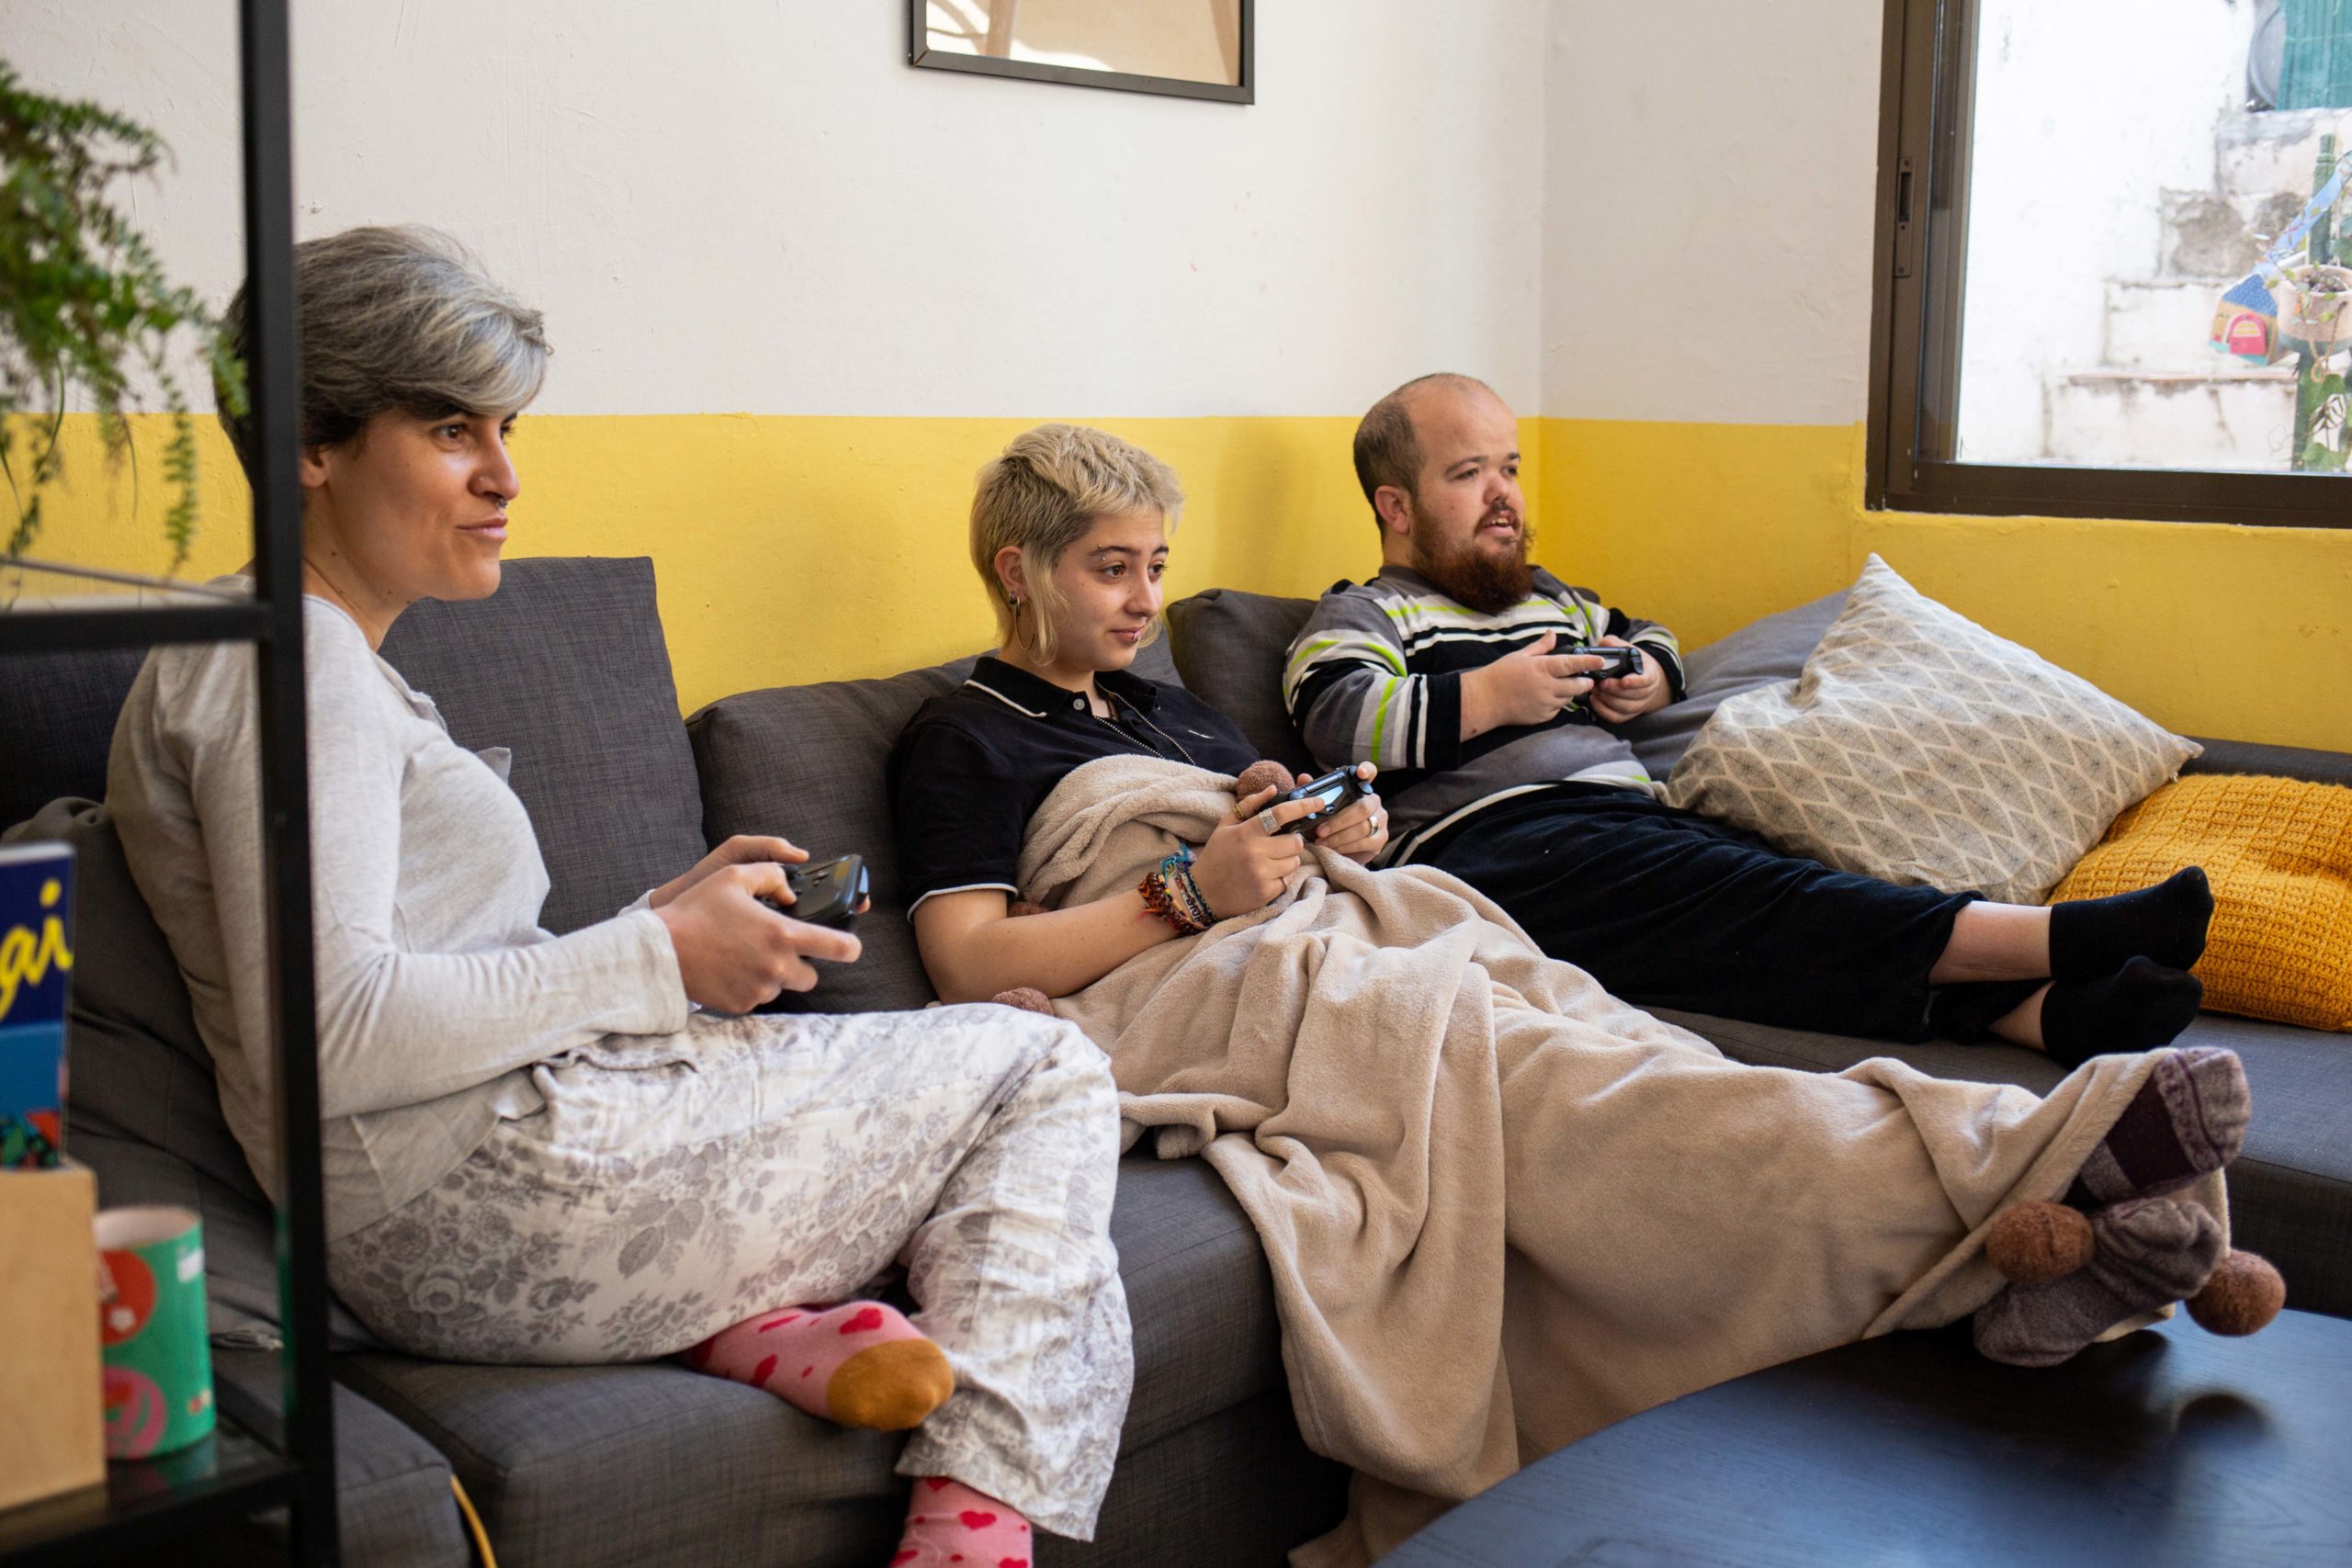 Tres companyes de pis jugant a un videojoc davant de la televisió i assegudes al sofà del menjador